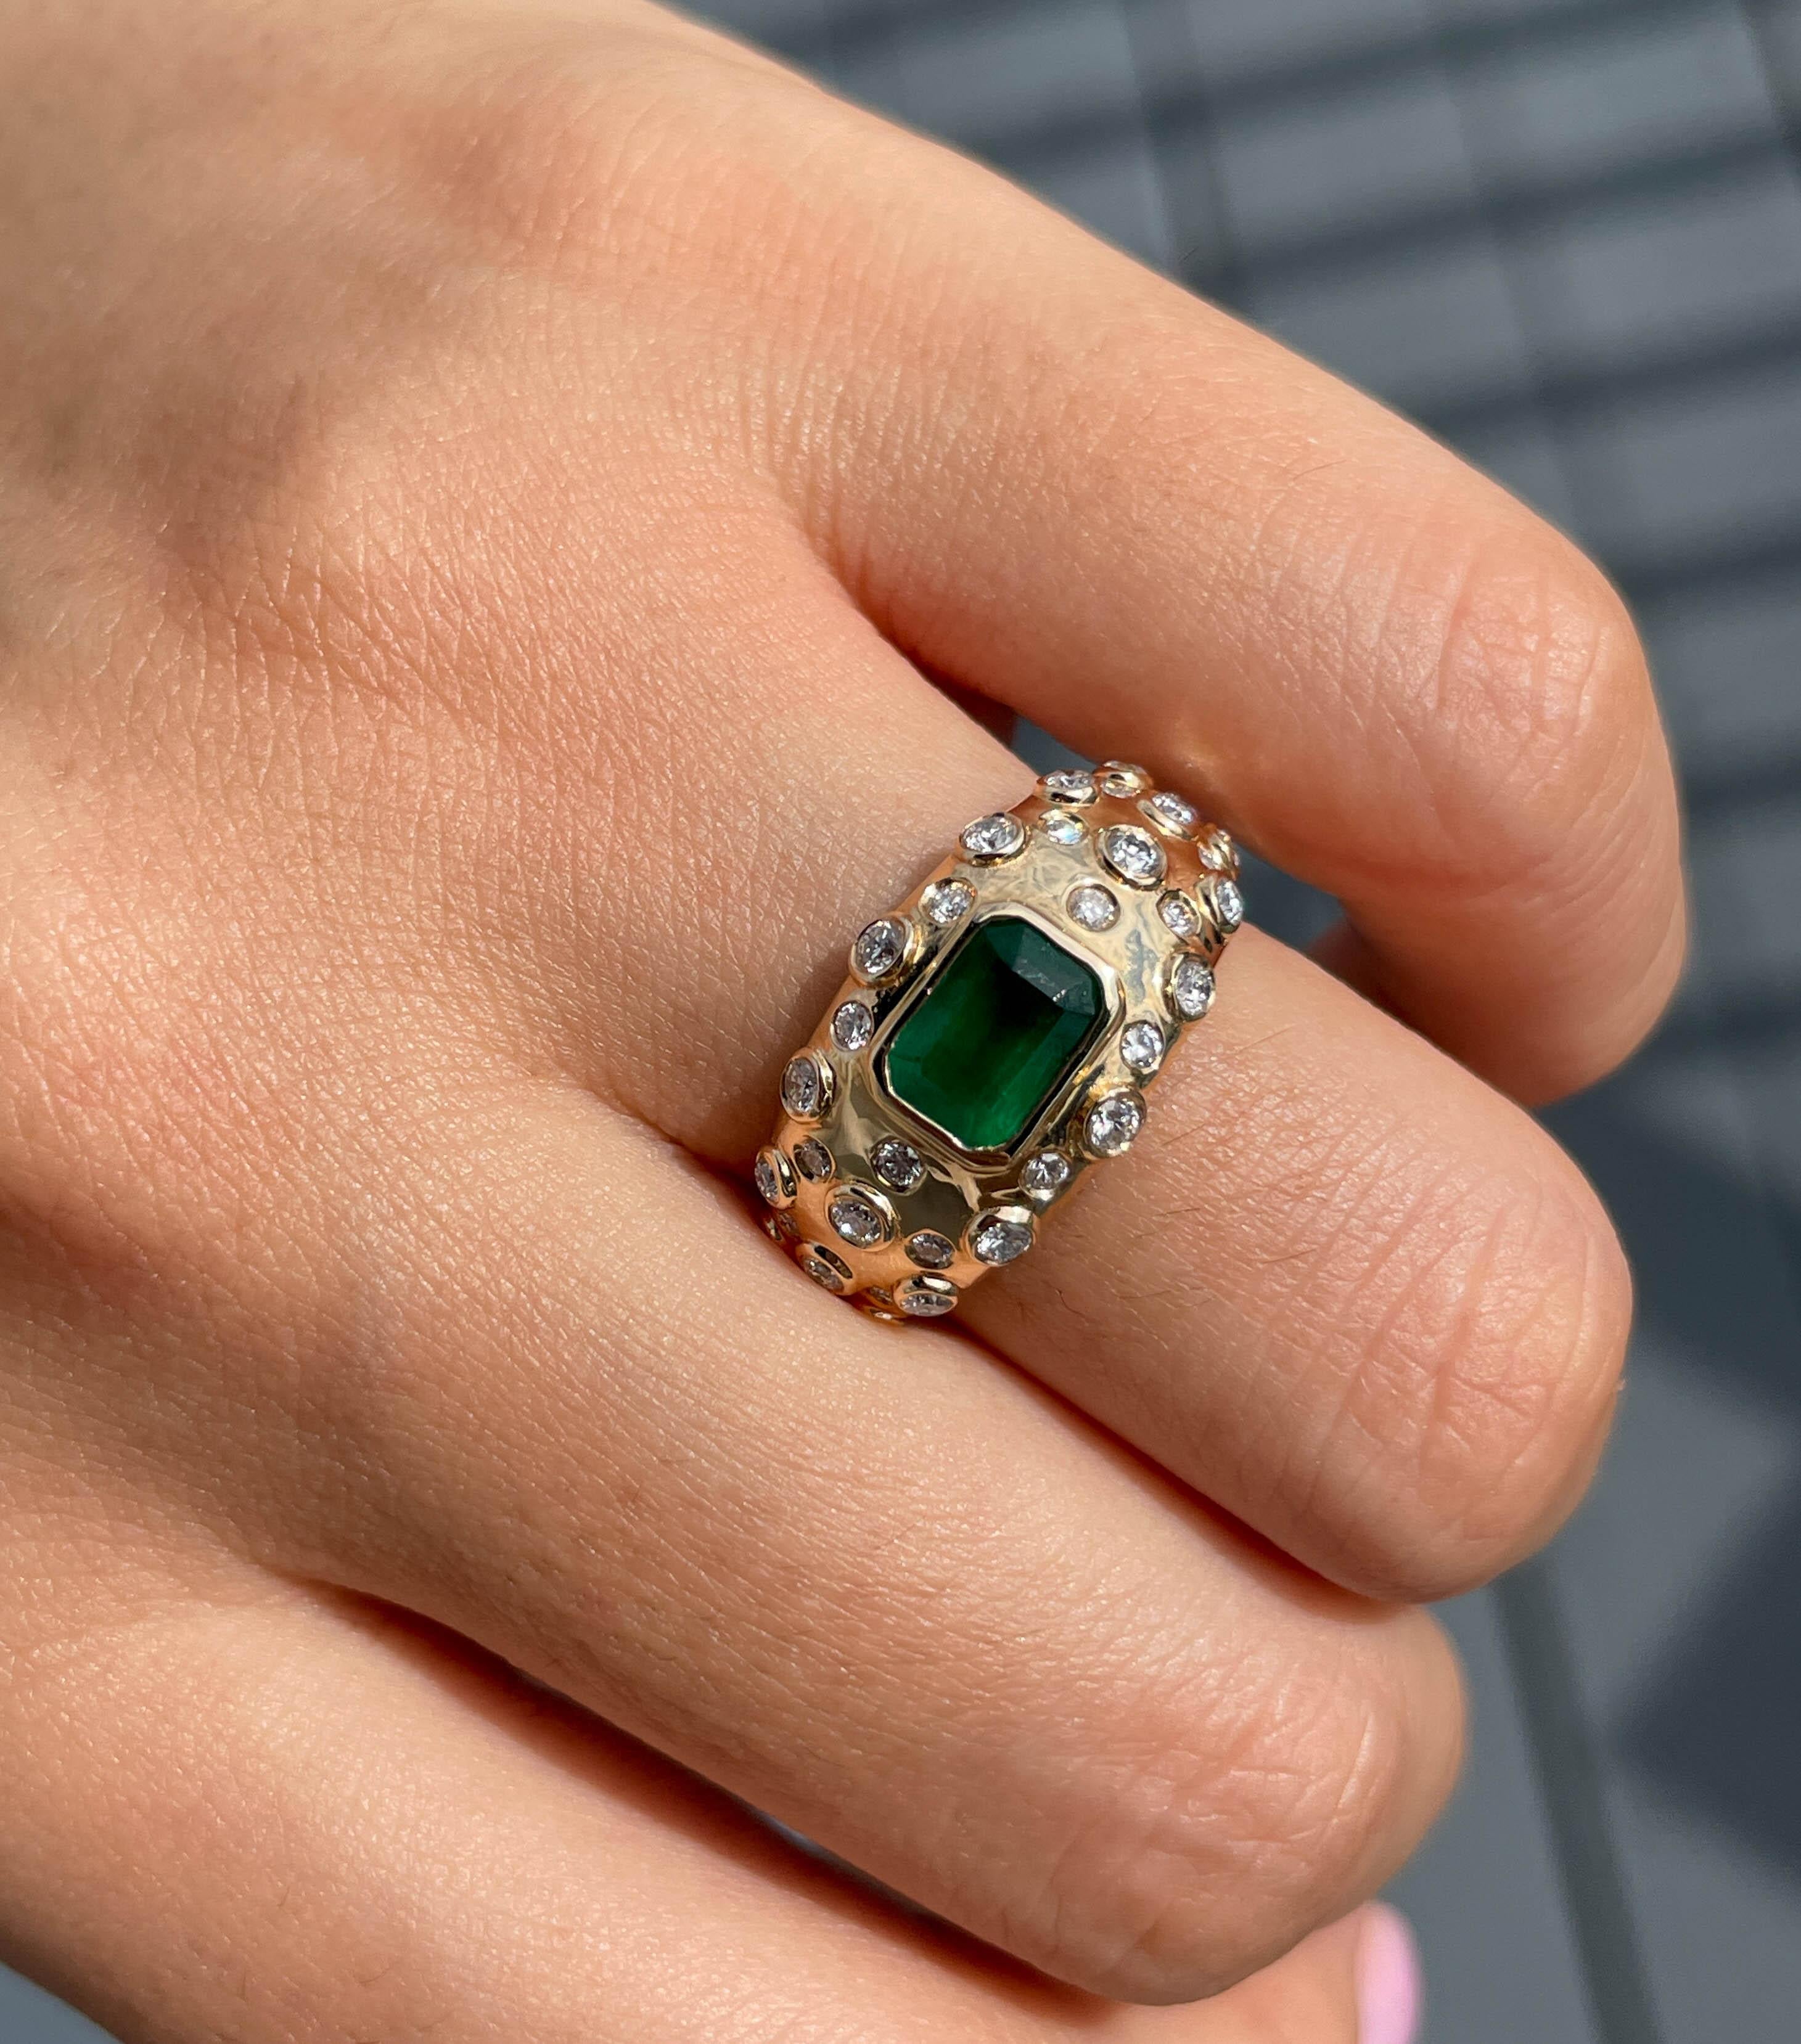 Jay Feders grüner Smaragd und Diamant Vintage Ring in 14k Gelbgold mit grünem Smaragd im Stufenschliff in der Mitte mit einem Gewicht von etwa 1,09ct. Mit kleinen runden Diamanten besetzt; geschätztes Gesamtgewicht 0,39ctw; Farbe G-H und Reinheit